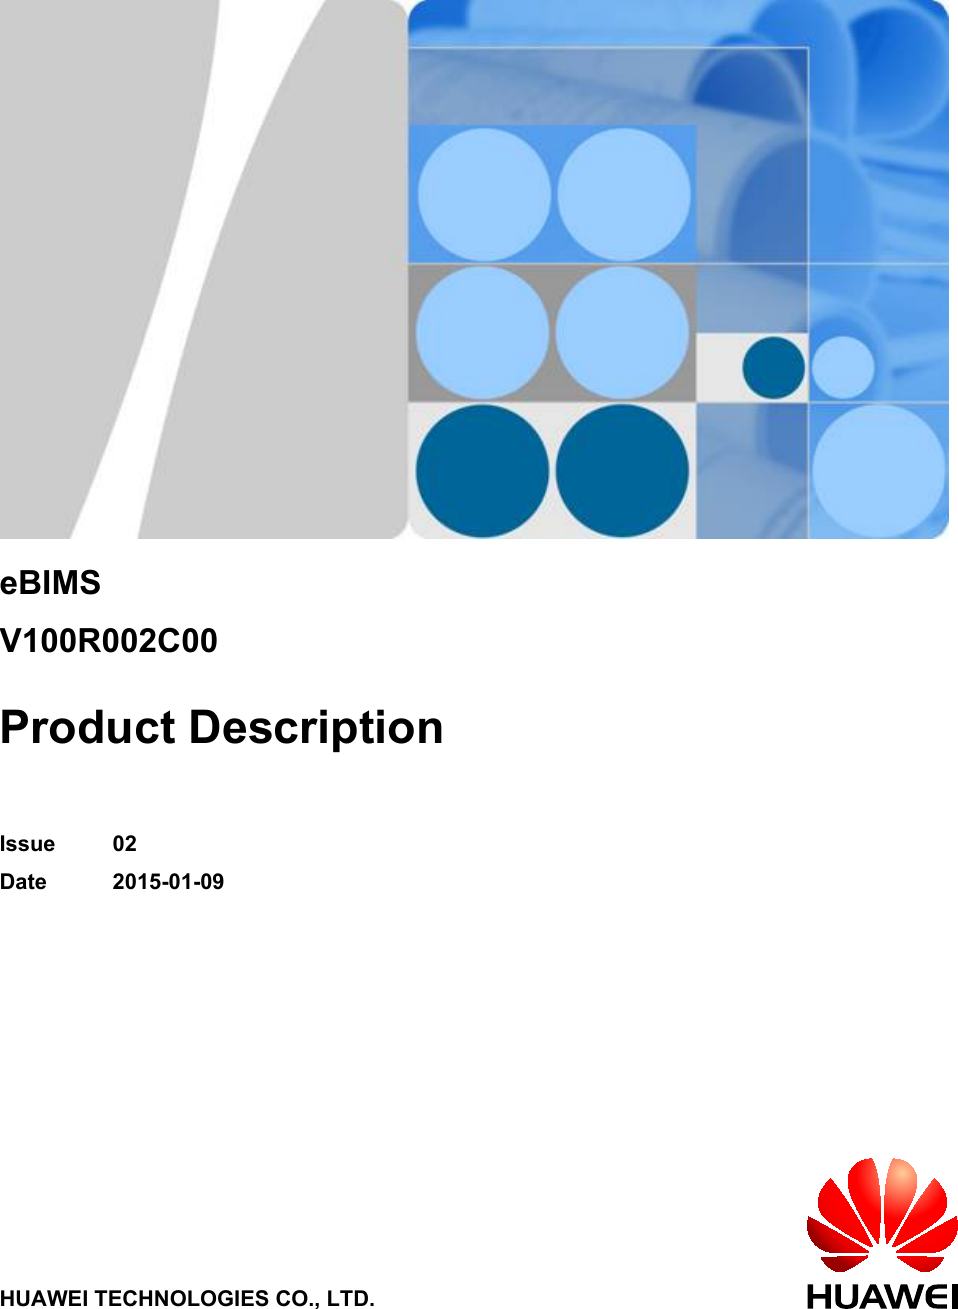 eBIMSV100R002C00Product DescriptionIssue 02Date 2015-01-09HUAWEI TECHNOLOGIES CO., LTD.